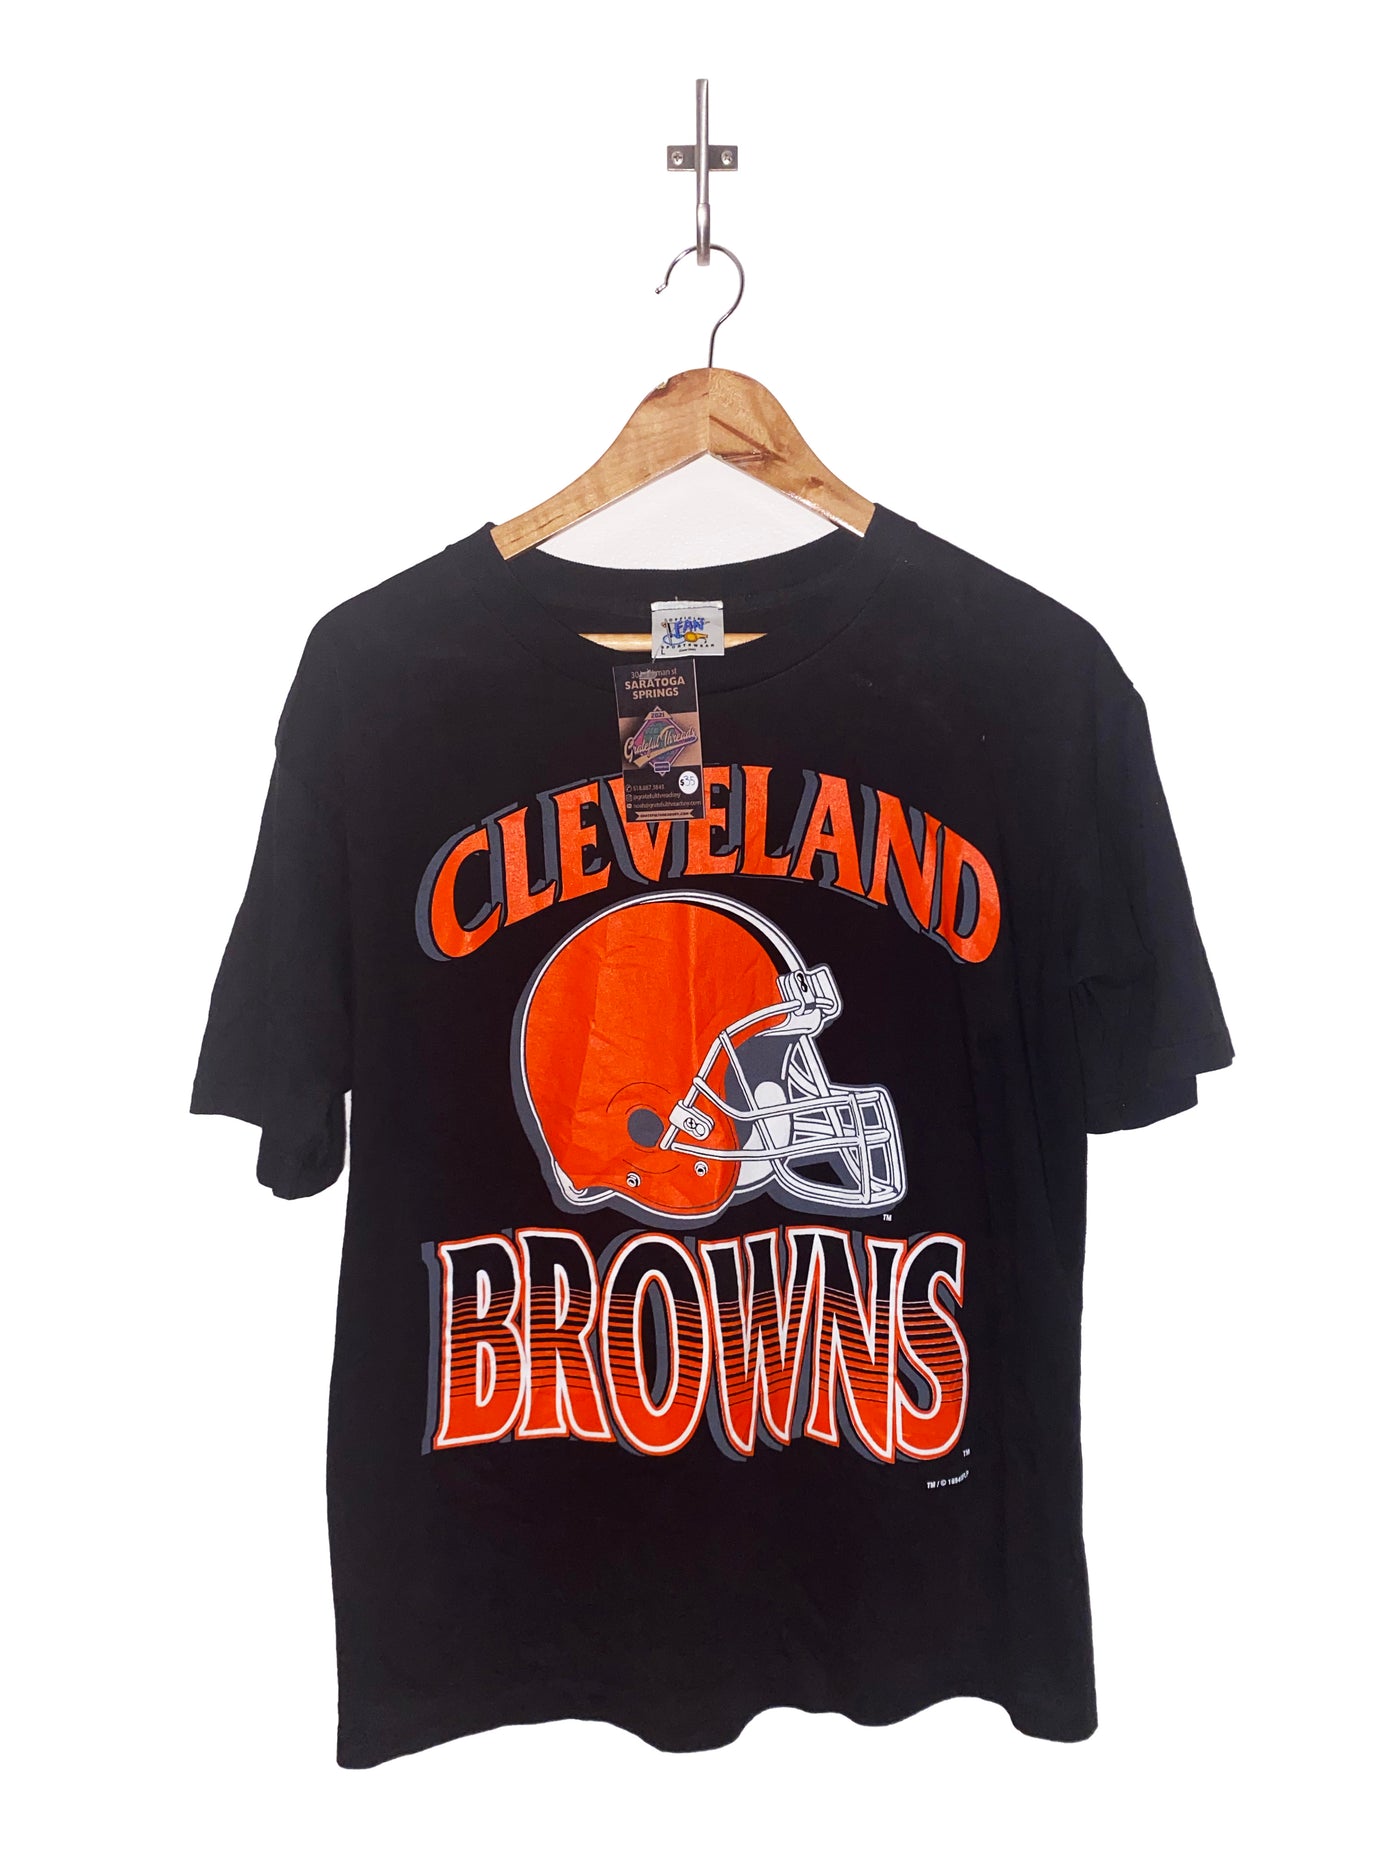 Vintage 1994 Cleveland Browns T-Shirt